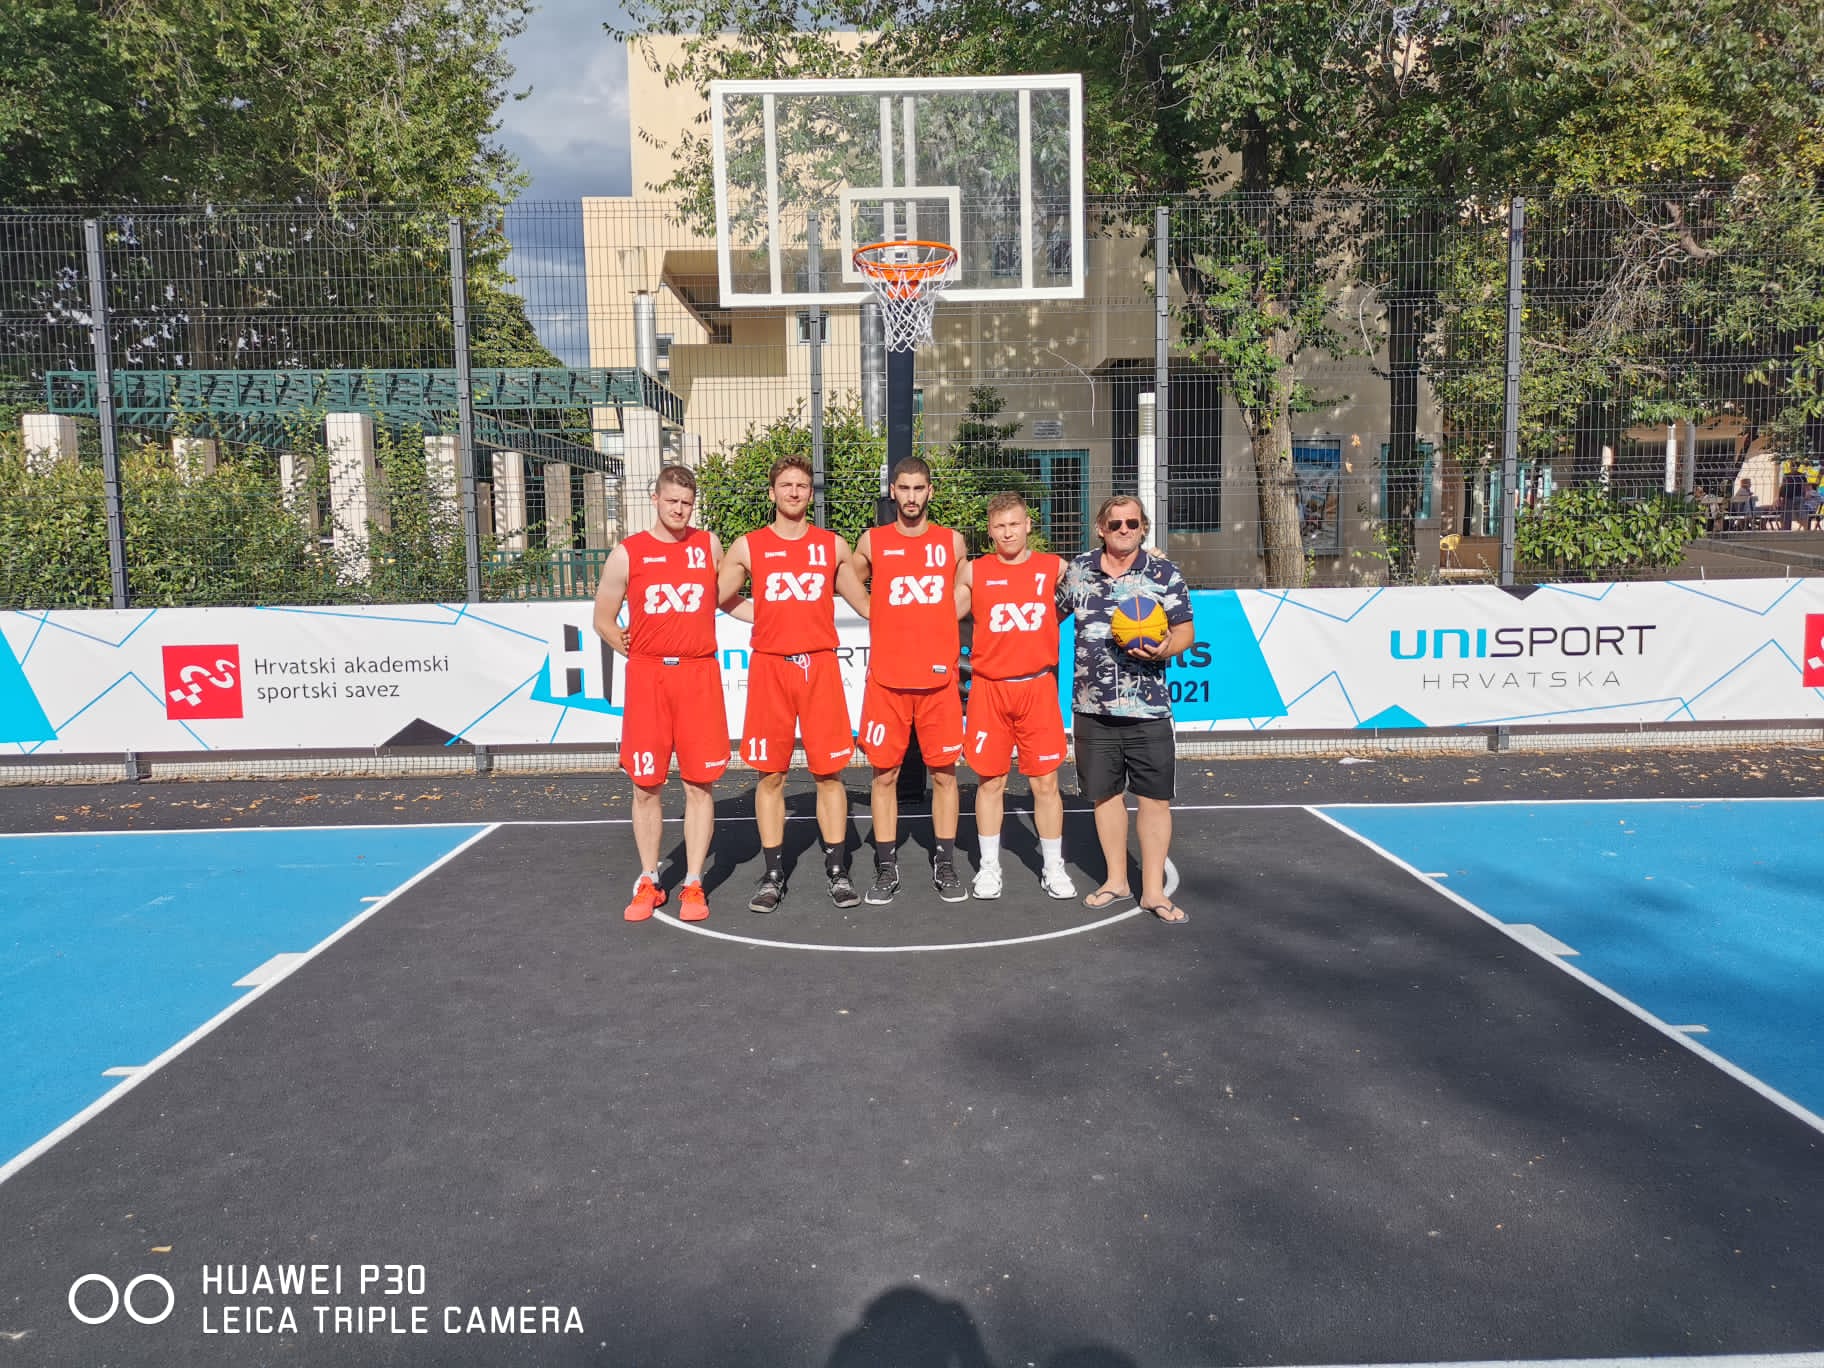 Studentska ekipa Sveučilišta Sjever nastupila je na završnici državnog prvenstva u 3×3 street košarci za studente.